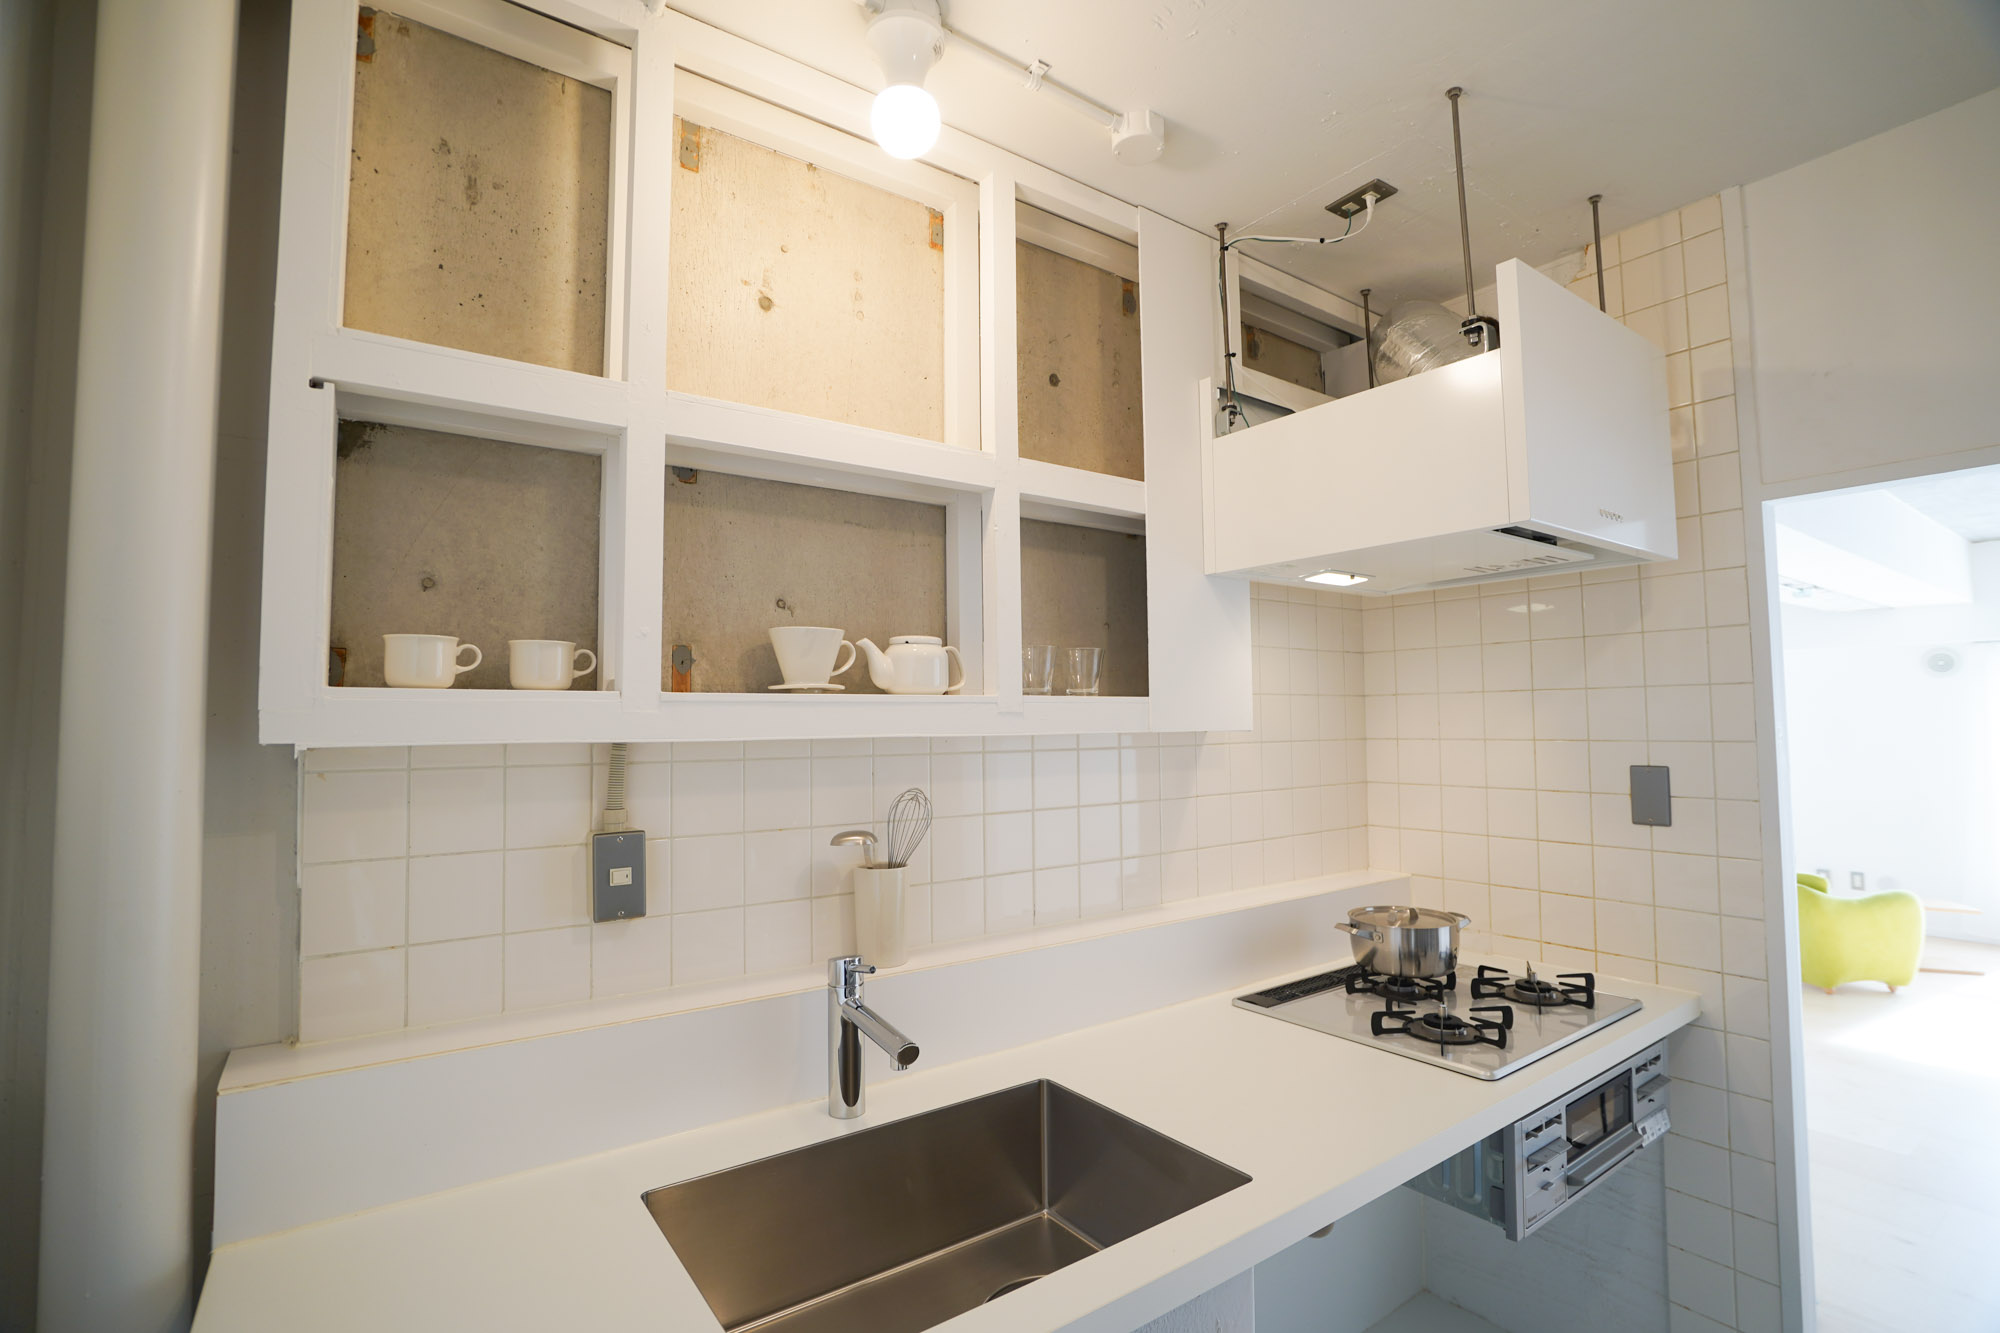 「MUJI×UR」共同開発のキッチンは、真っ白な天板がかっこいい。あえて扉や引き出しはつけられていないので、自分の好みの収納ボックスやゴミ箱などを自由に組み合わせて使えます。